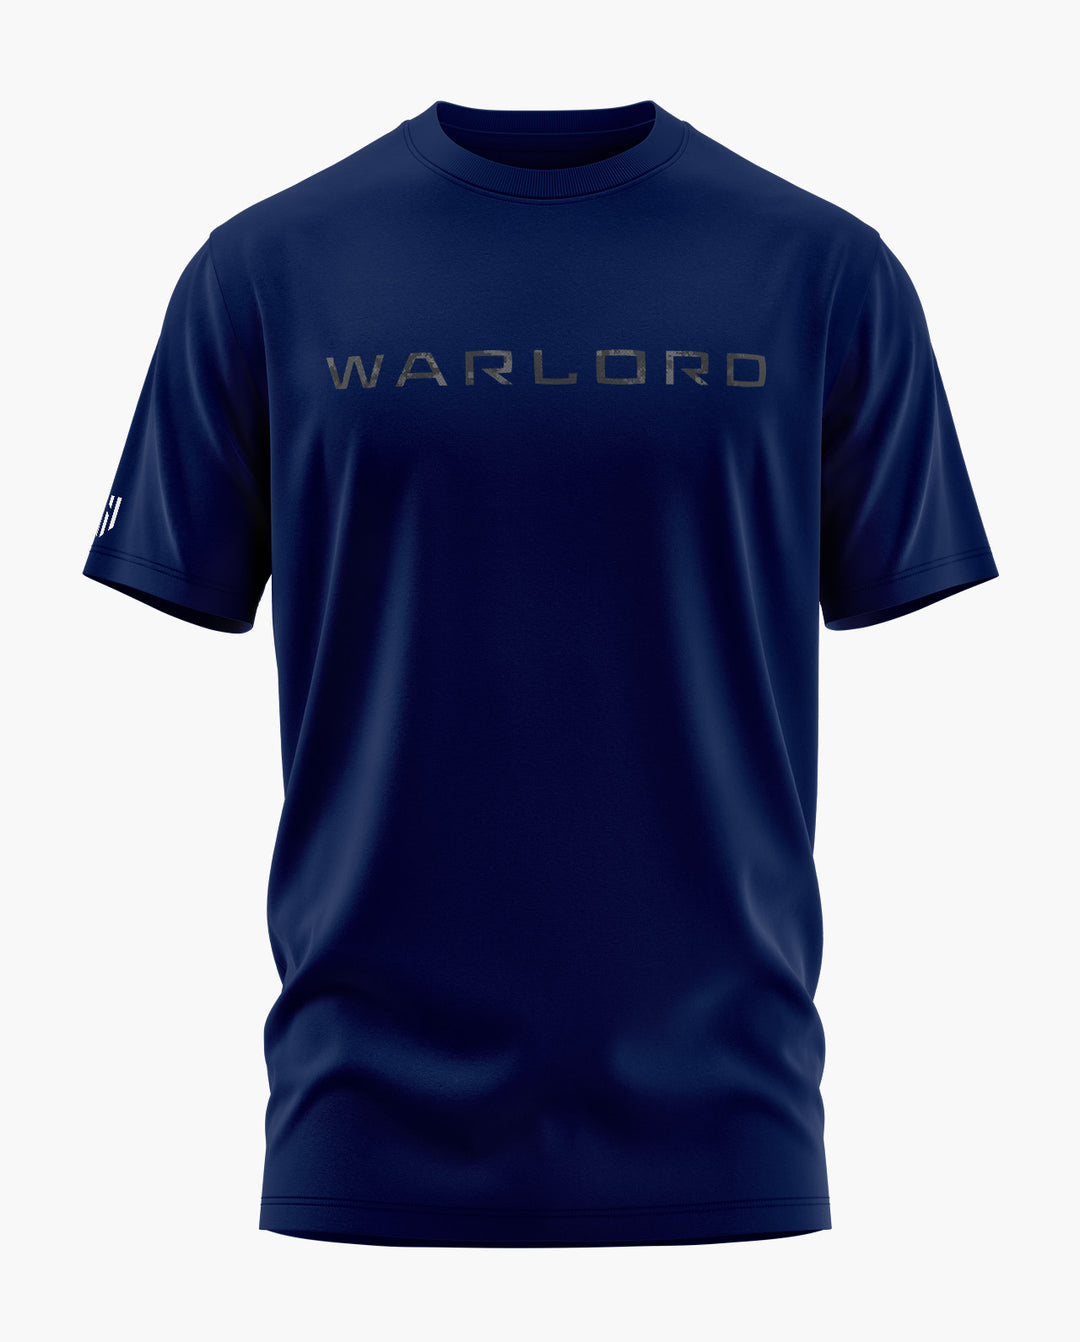 WARLORD T-Shirt